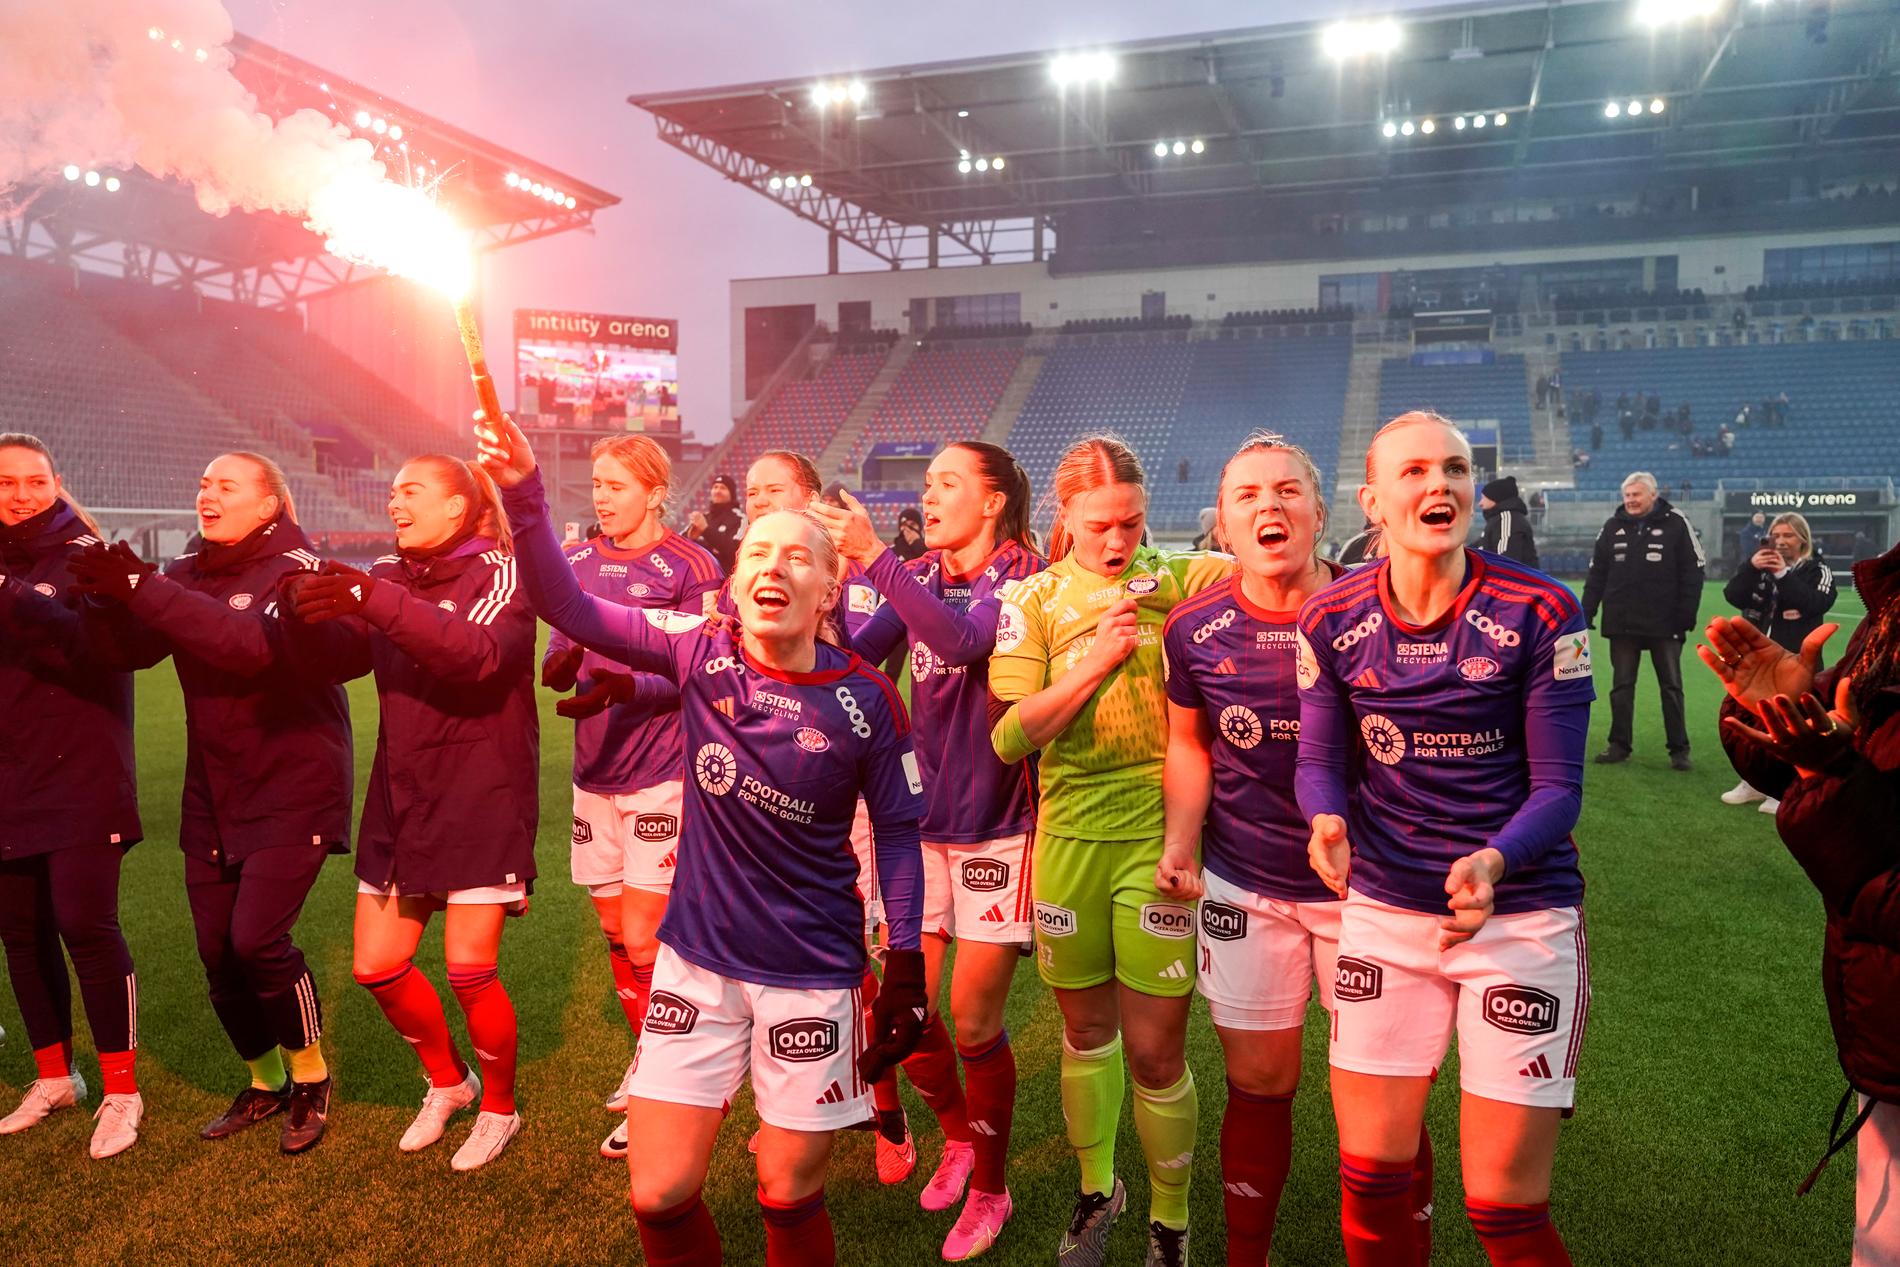 Campioni della Valerenga – Il Rosenborg ha inciampato contro l’LSK